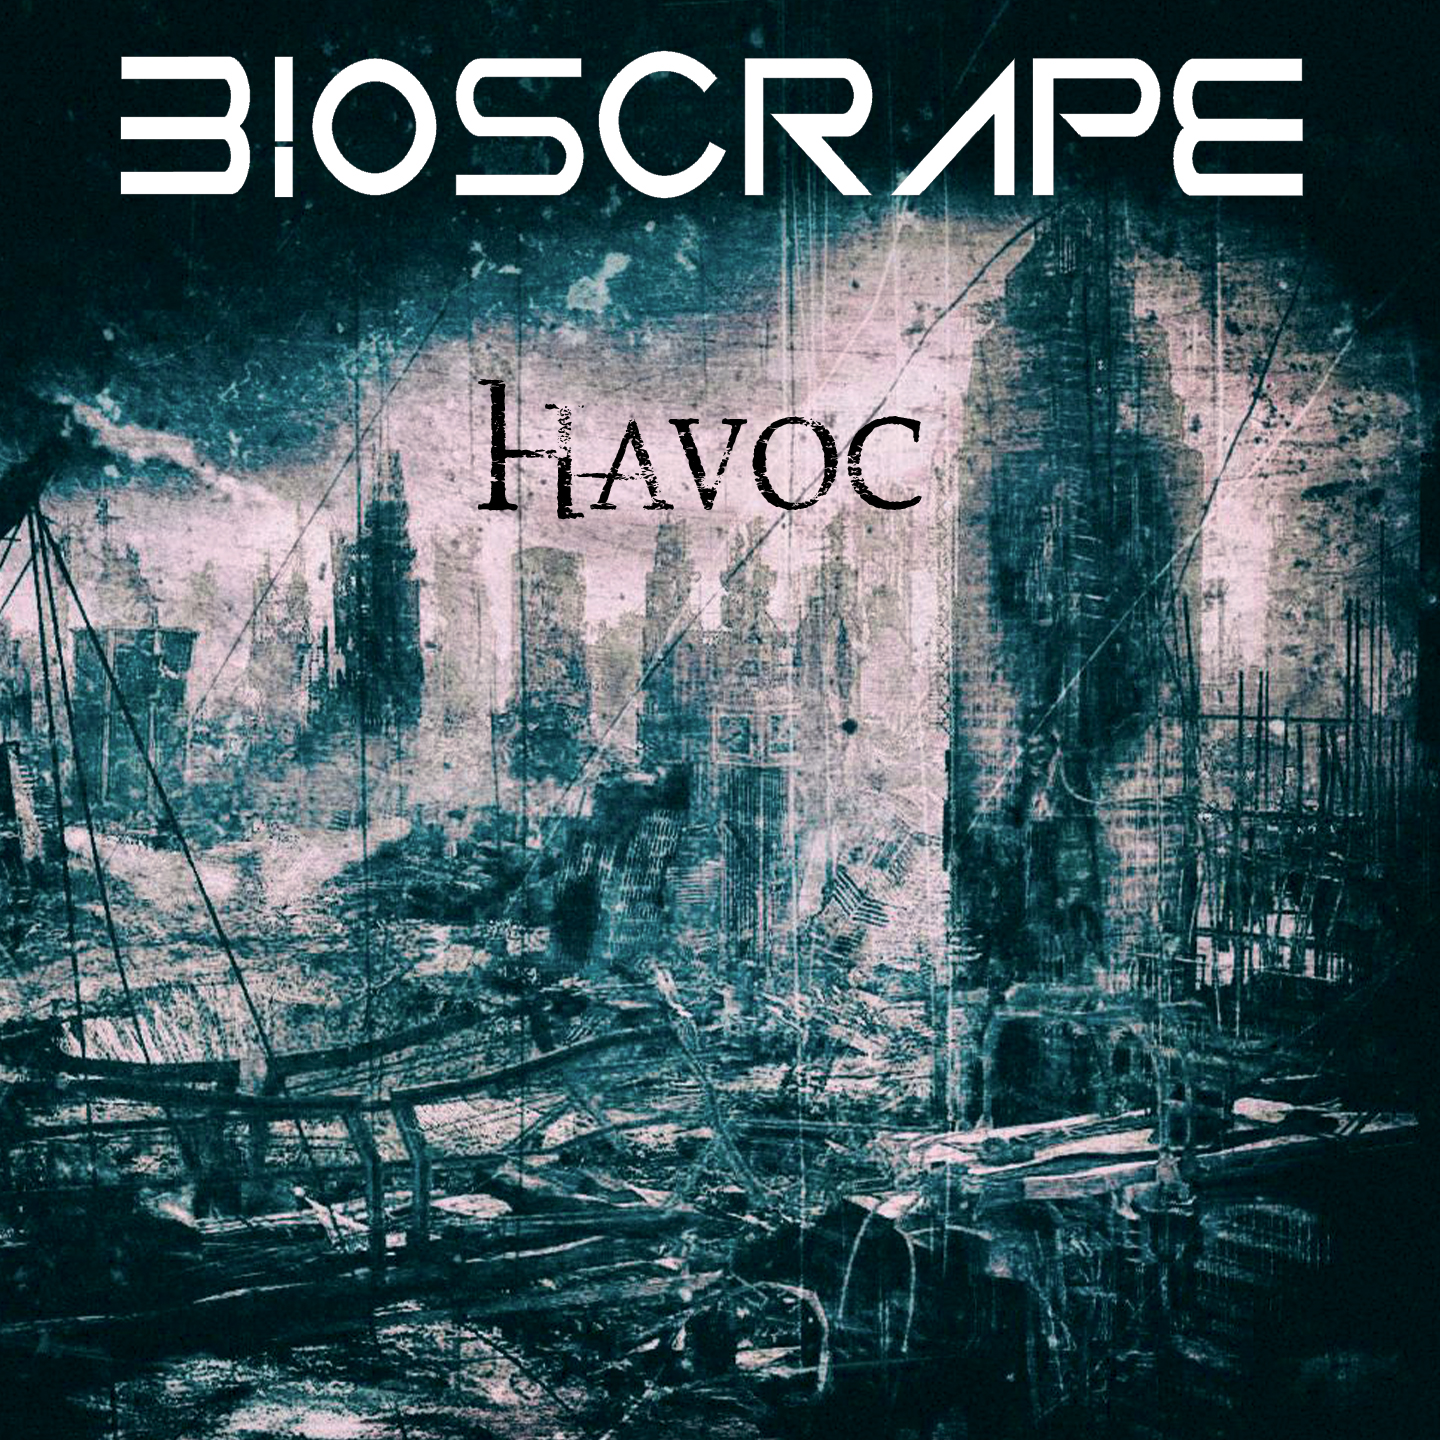 Bioscrape – “Havoc”